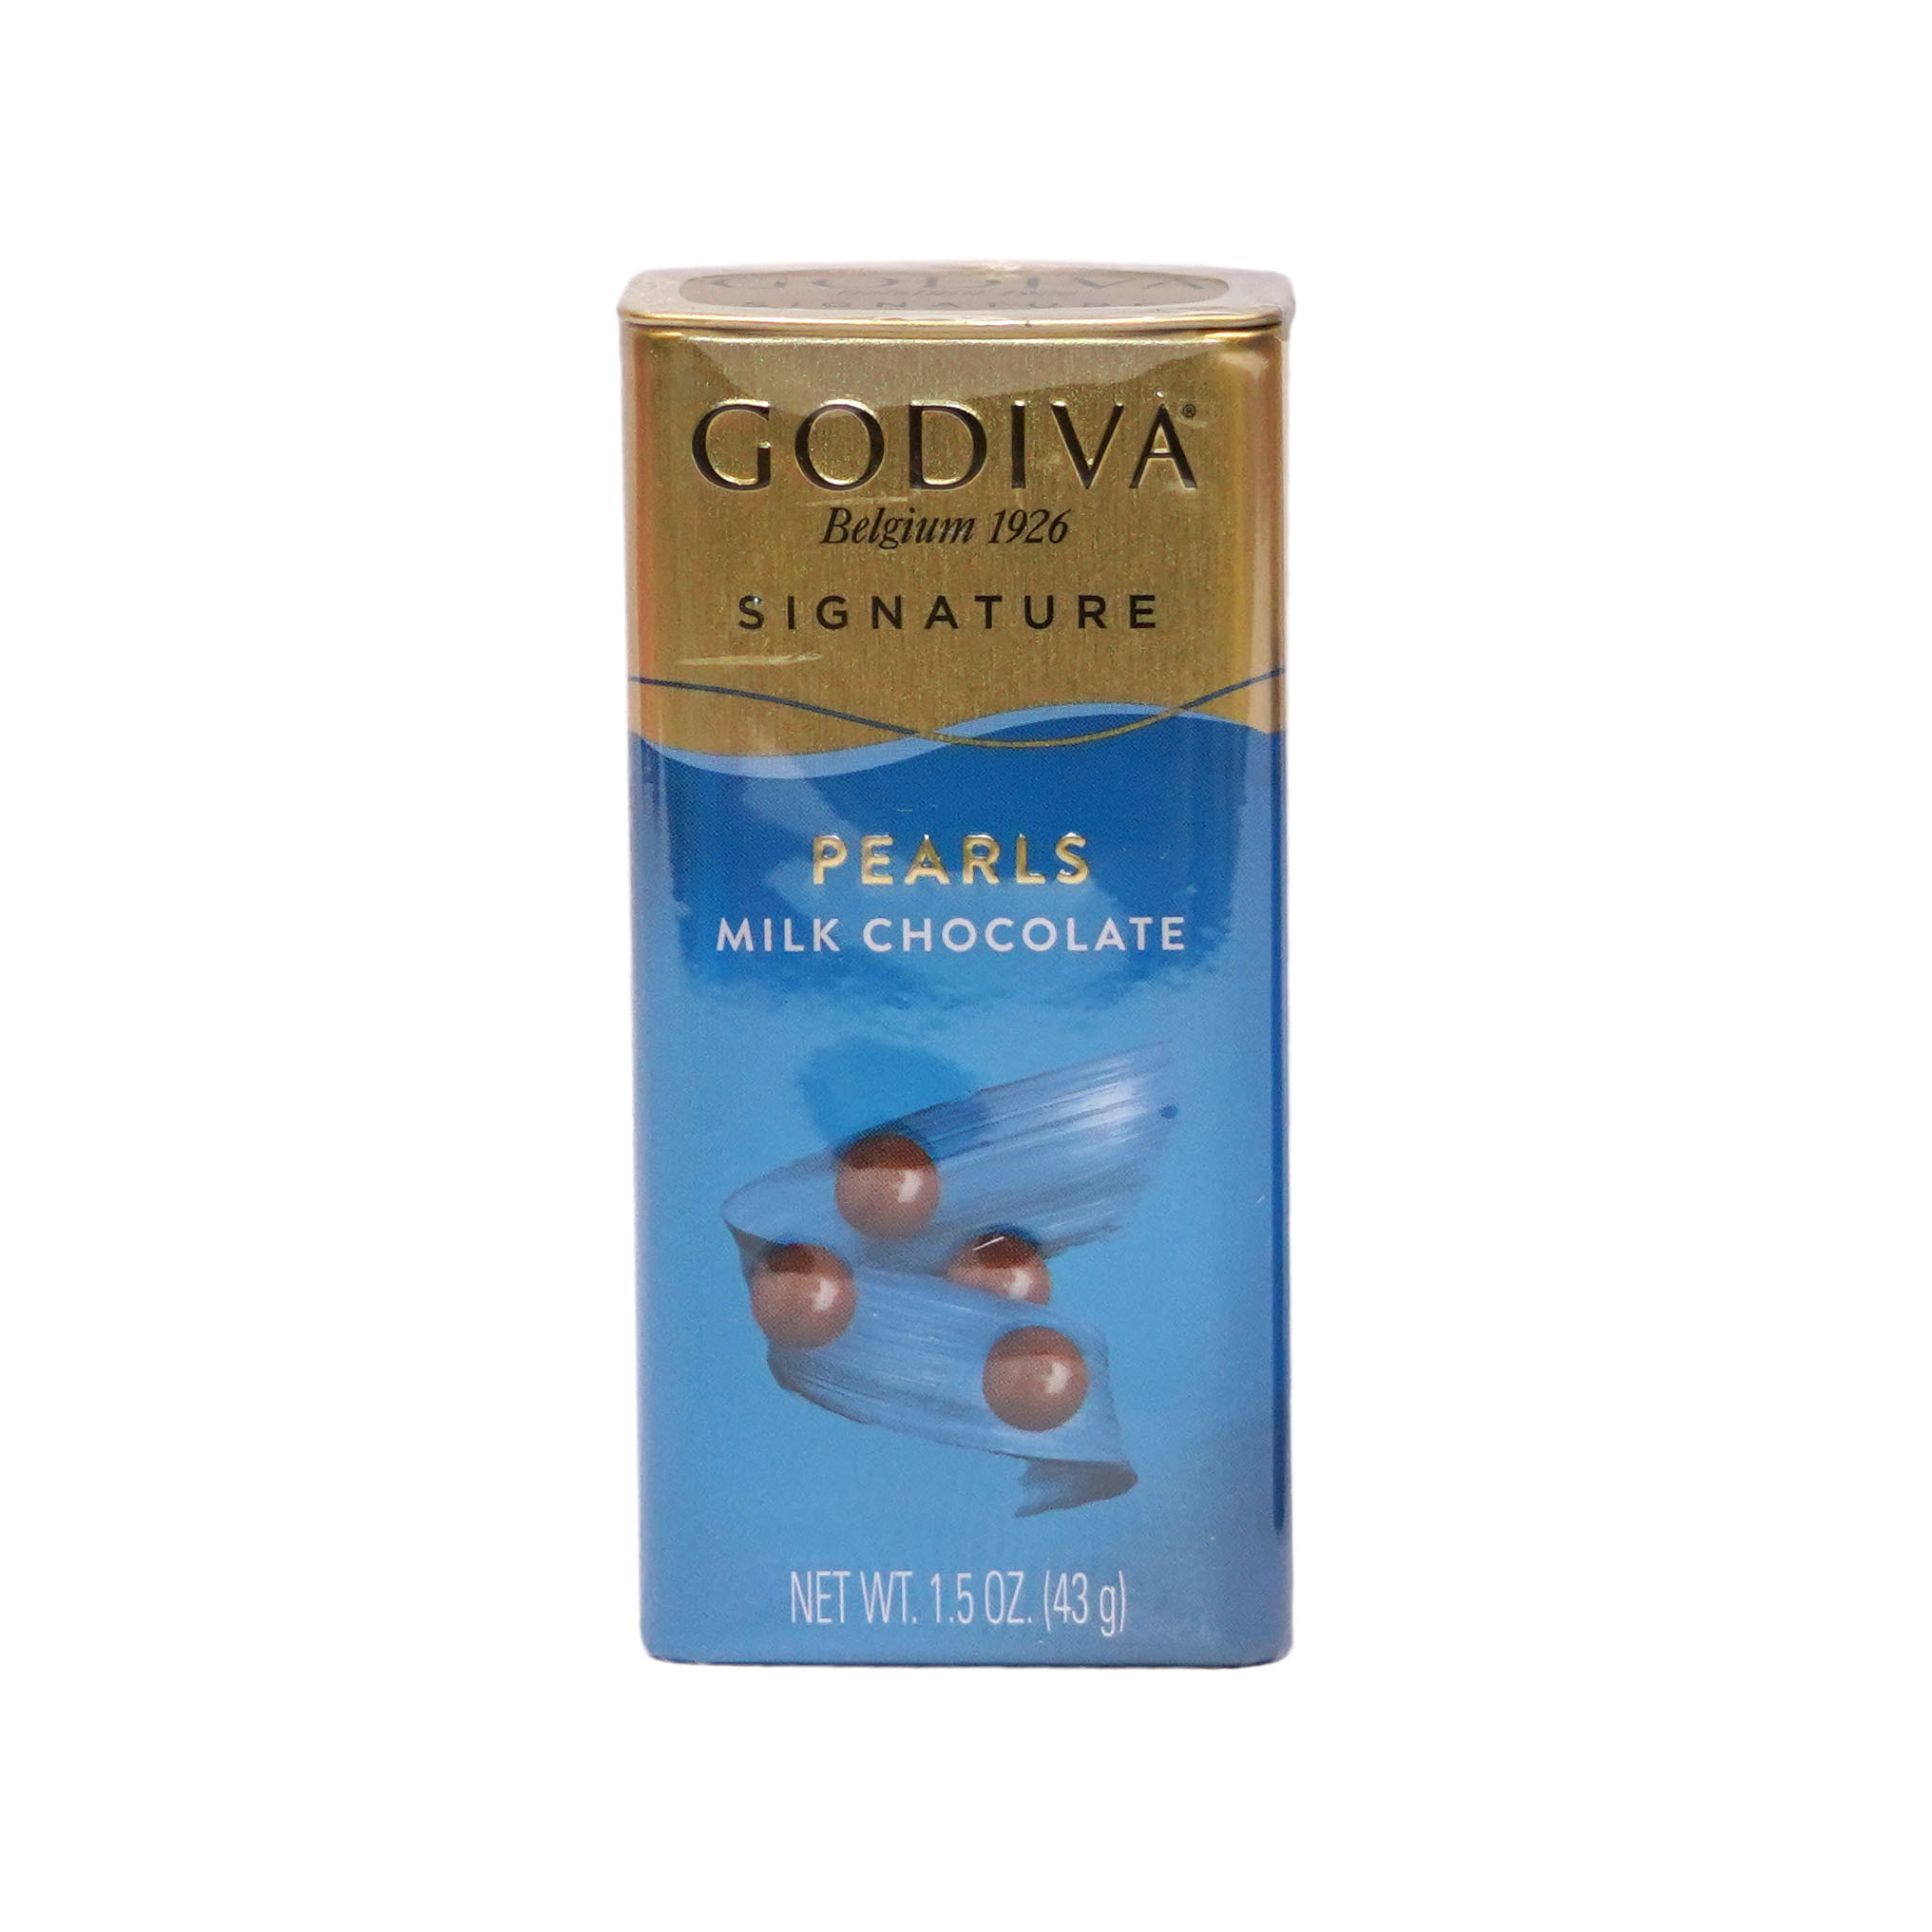 Godiva Milk Chocolate Pearls (43g)